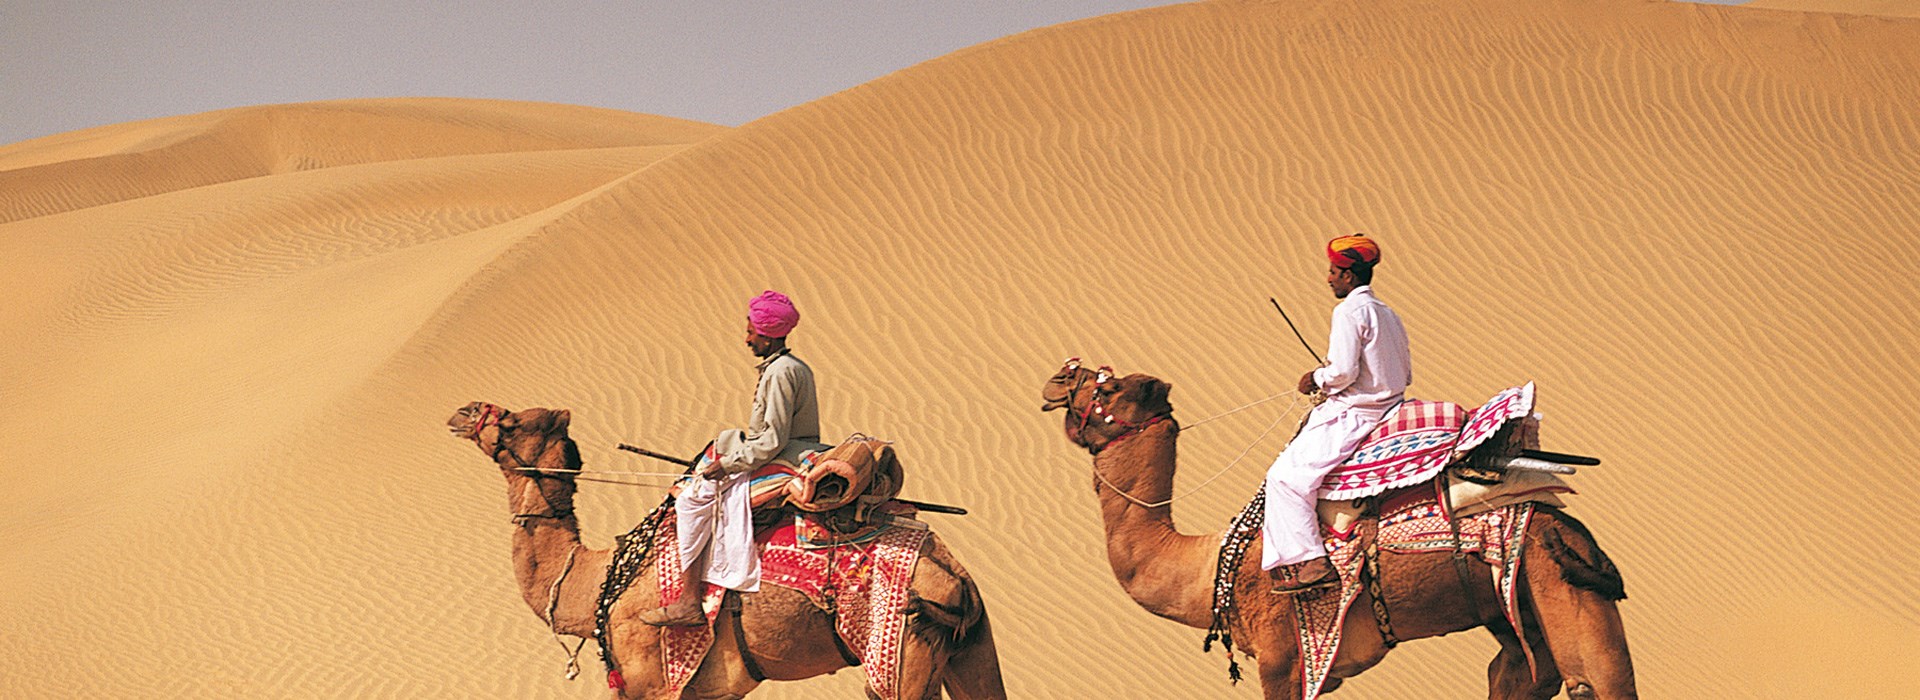 Visiter Le désert du Thar - Inde